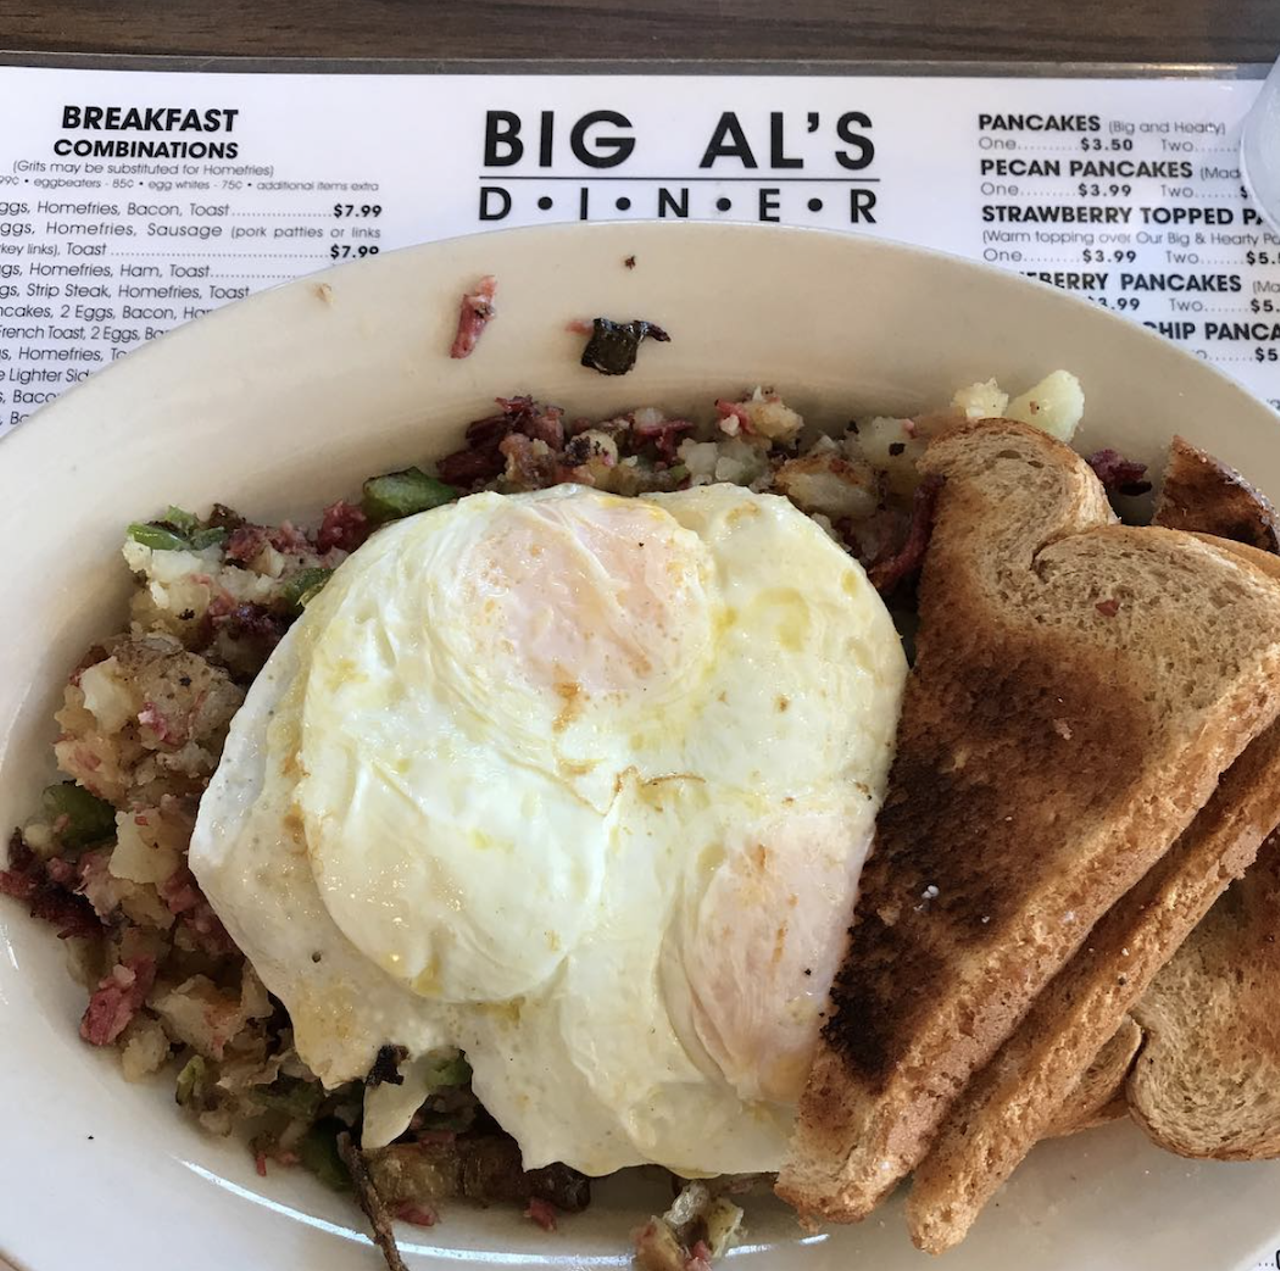 Big Al’s Diner
12600 Larchmere Blvd., Cleveland
“Big Al’s Diner in Larchmere”
Via SurprisedSubaru/Reddit